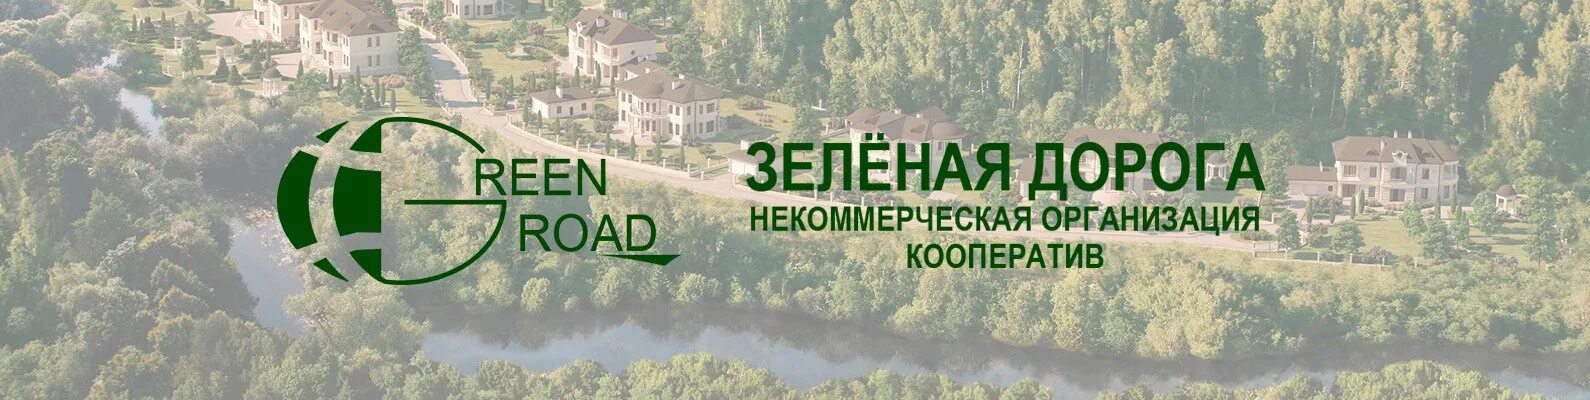 Проект зеленая дорога. Зеленая дорожная компания. Кооп зеленый. Логотип проекта«зеленая дорога» Усть-Лабинск.